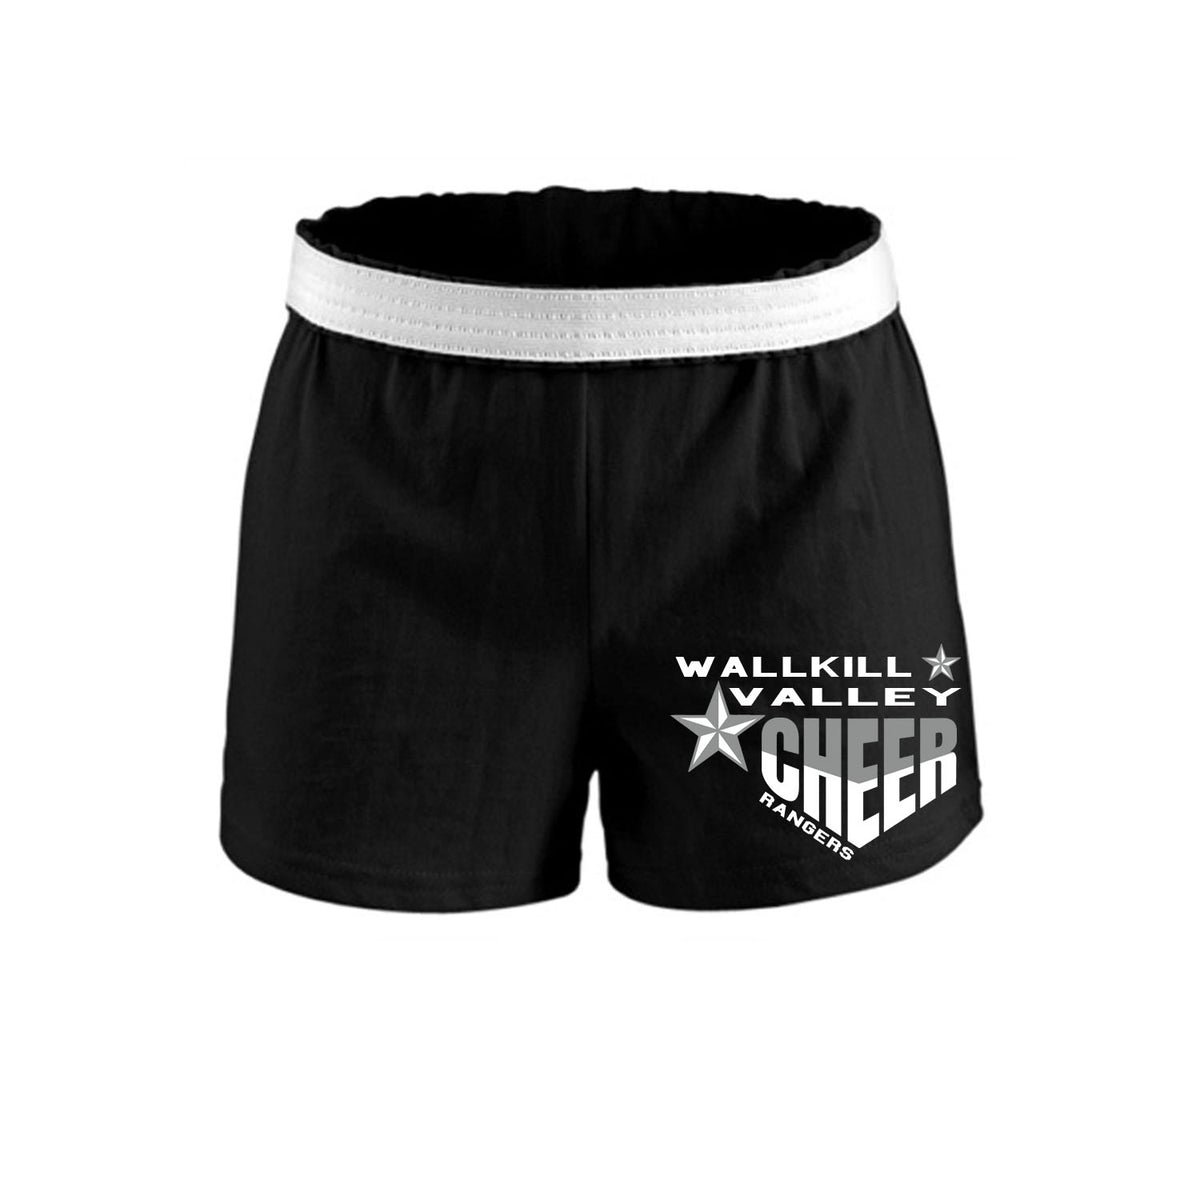 Wallkill Cheer Design 5 Shorts